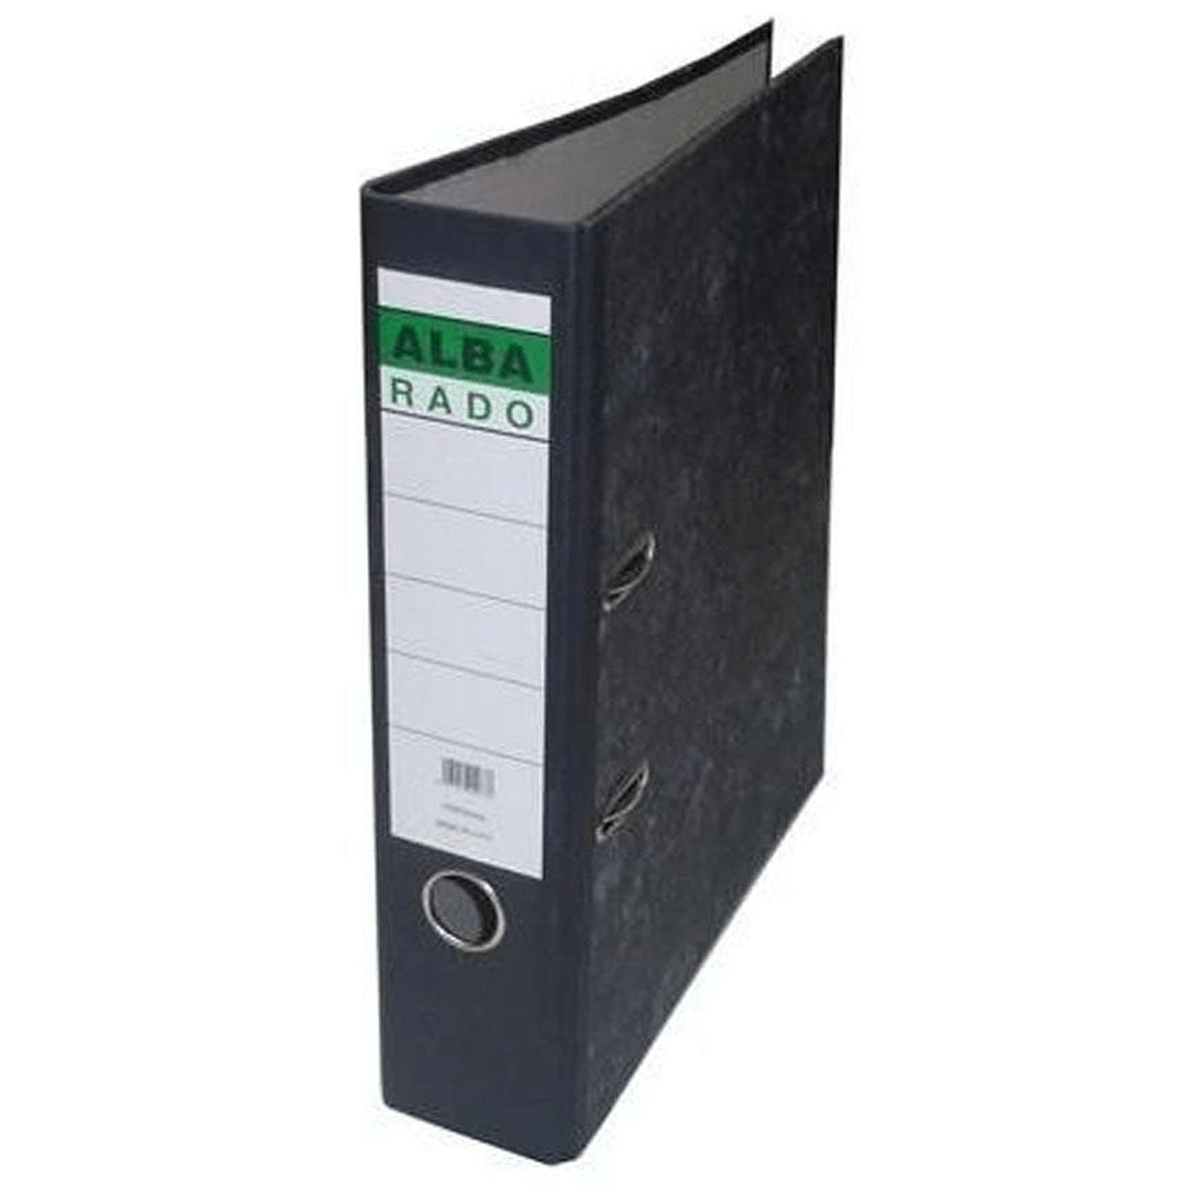 Alba Rado Box File - 8CM-50 PCS - SquareDubai